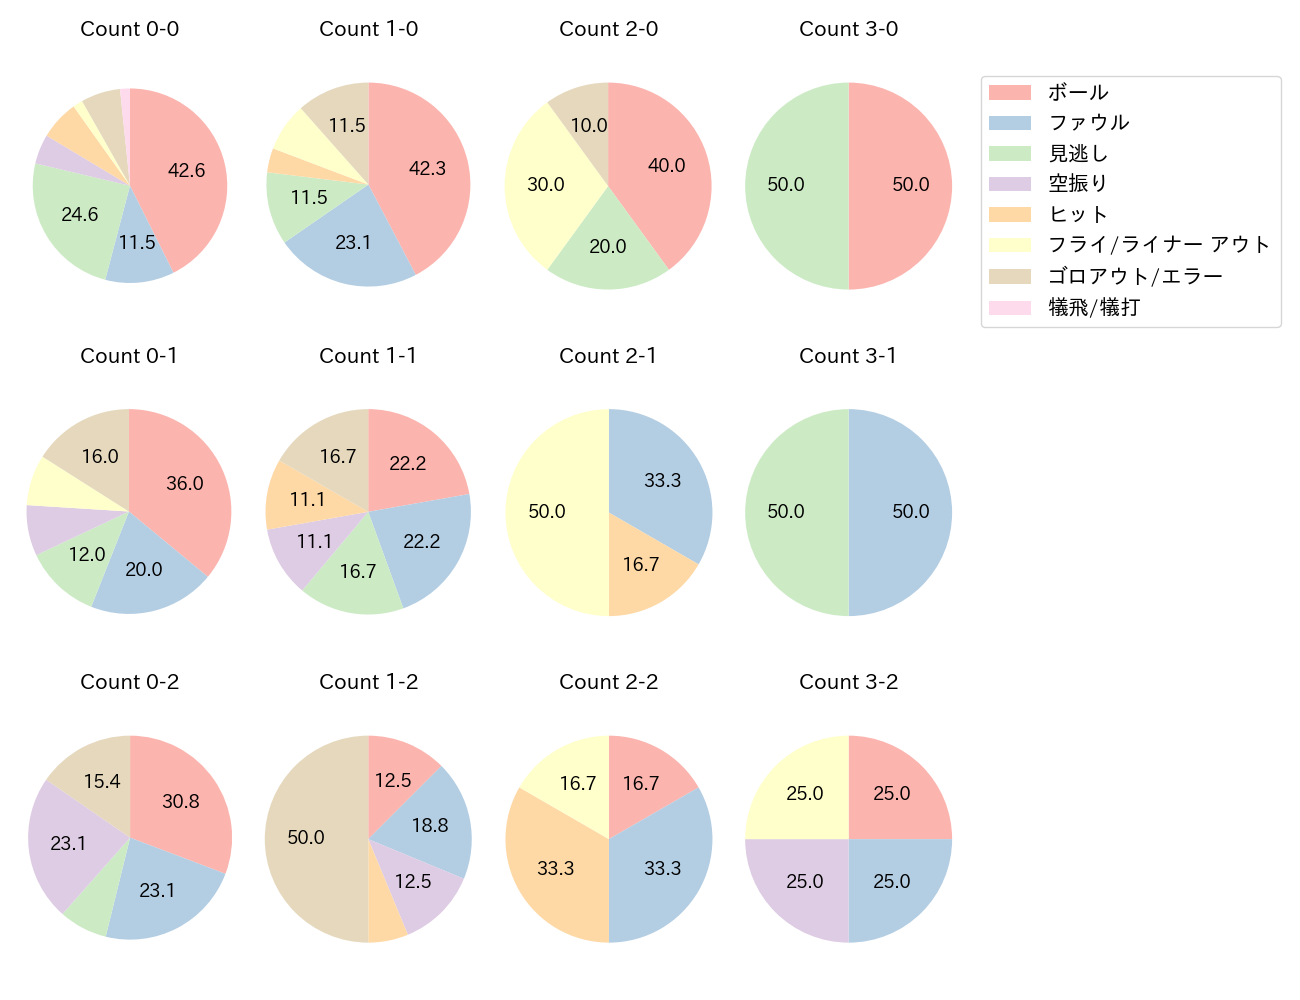 京田 陽太の球数分布(2022年4月)